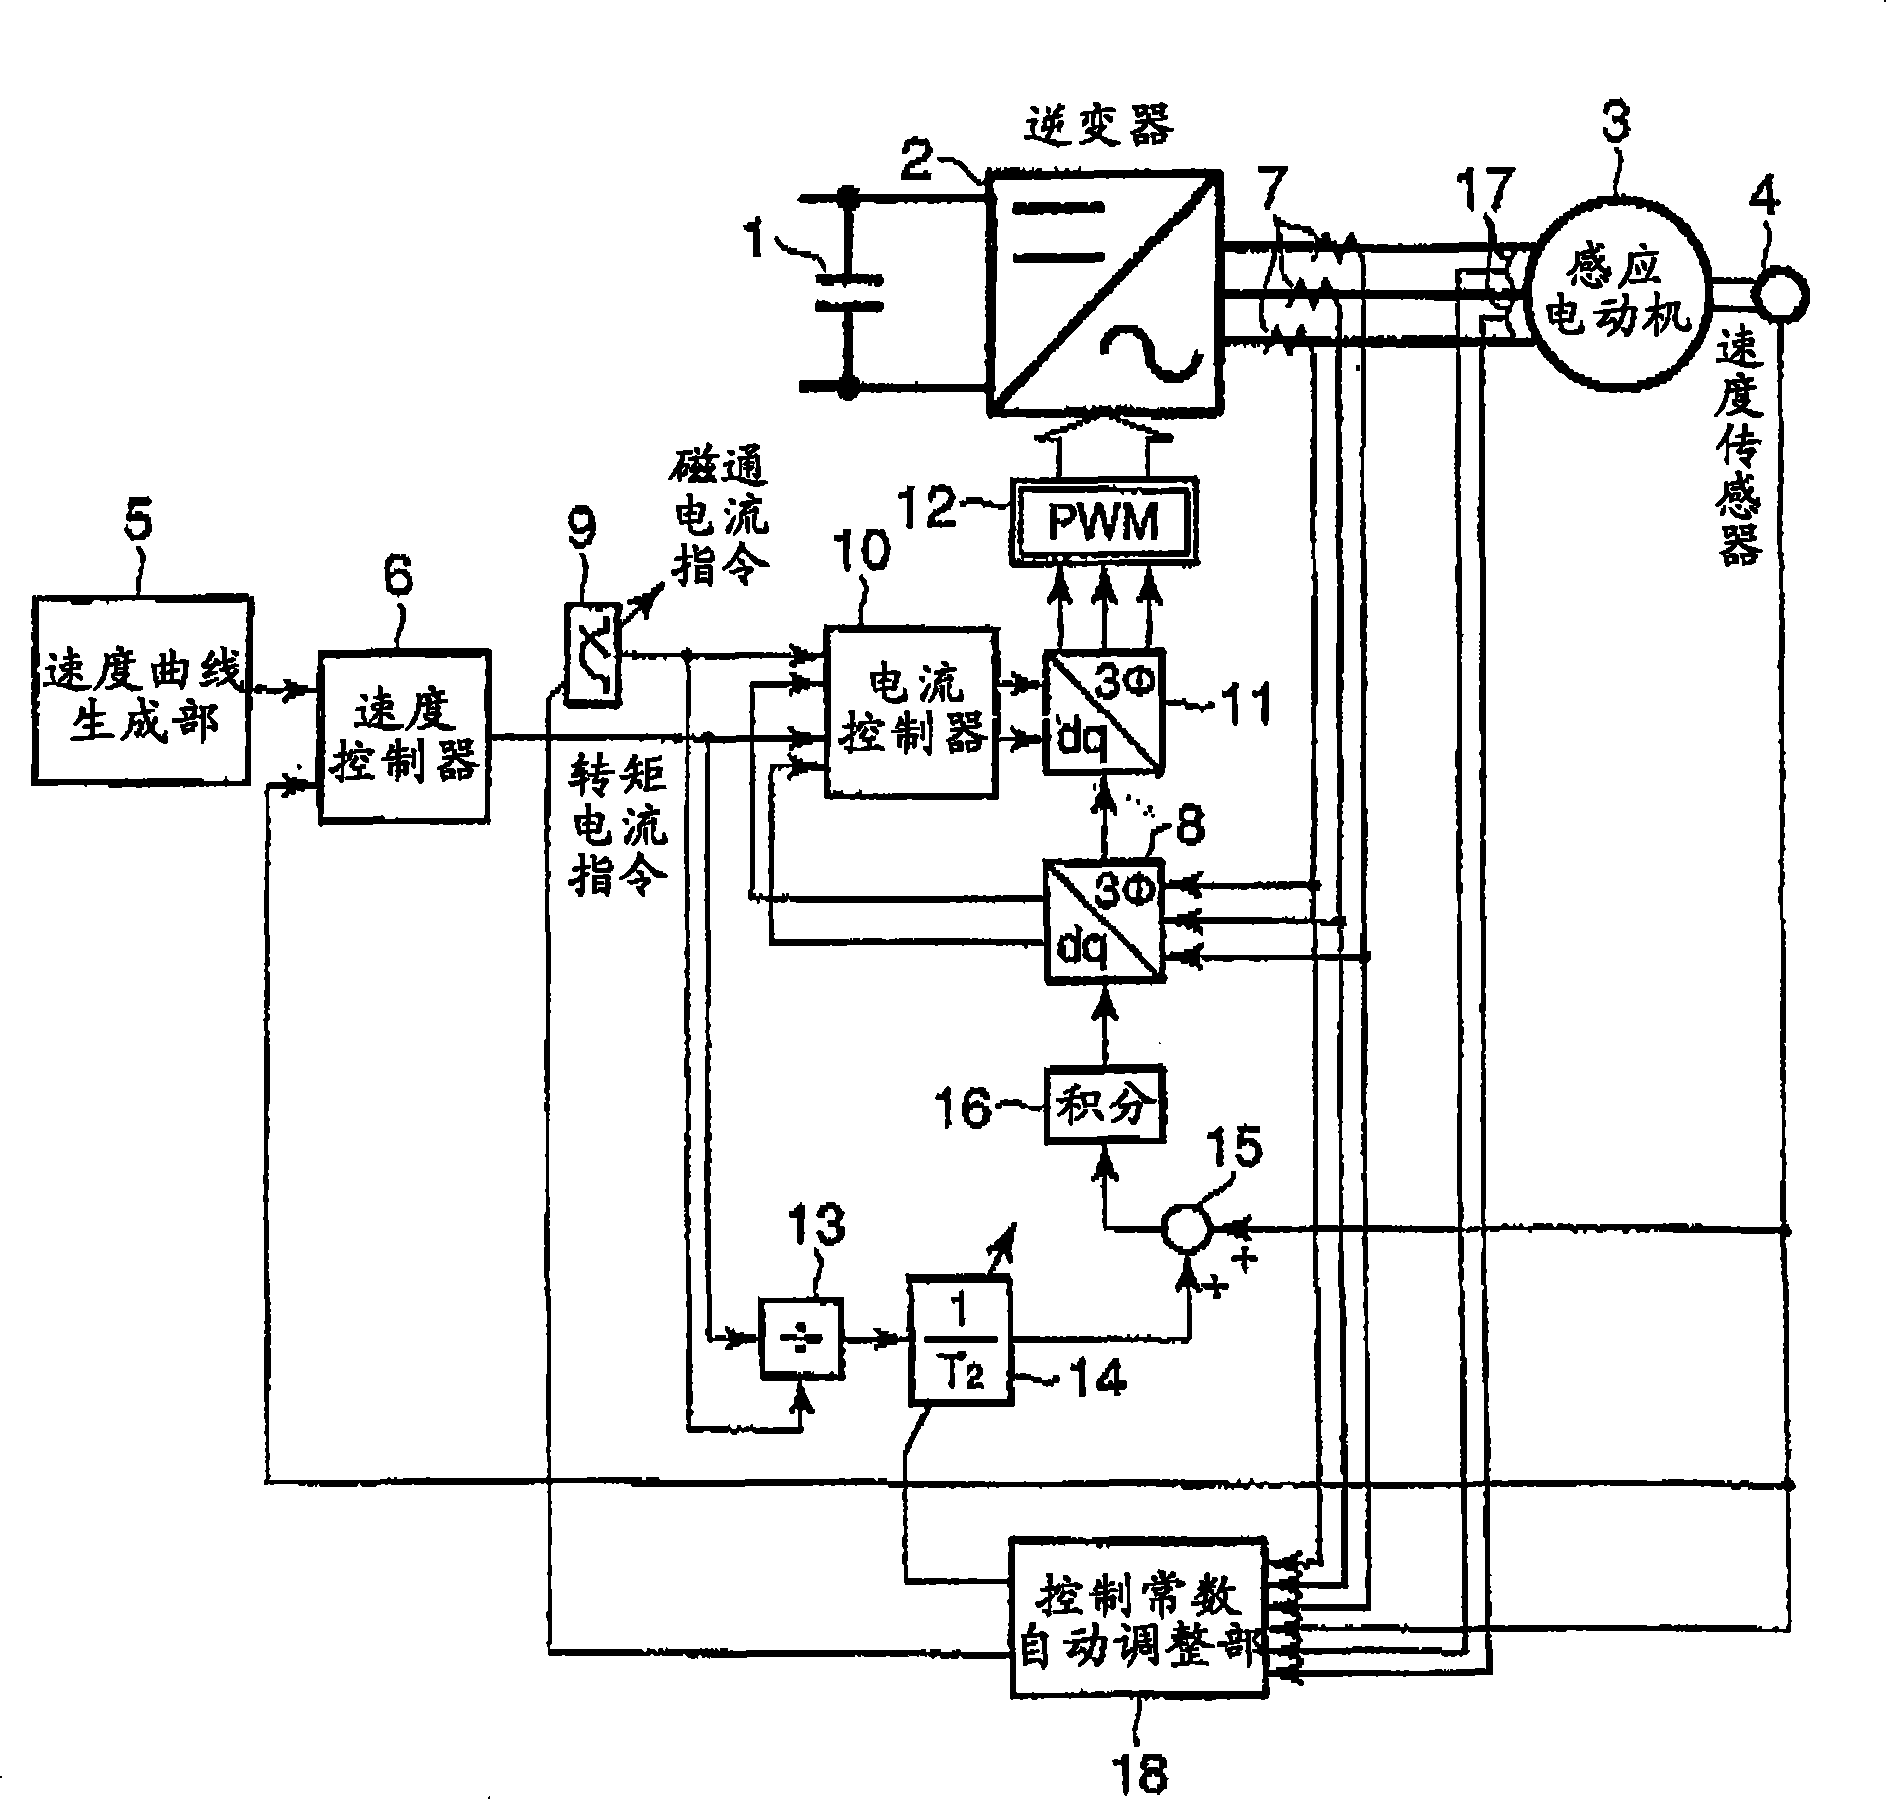 Motor control apparatus of elevator